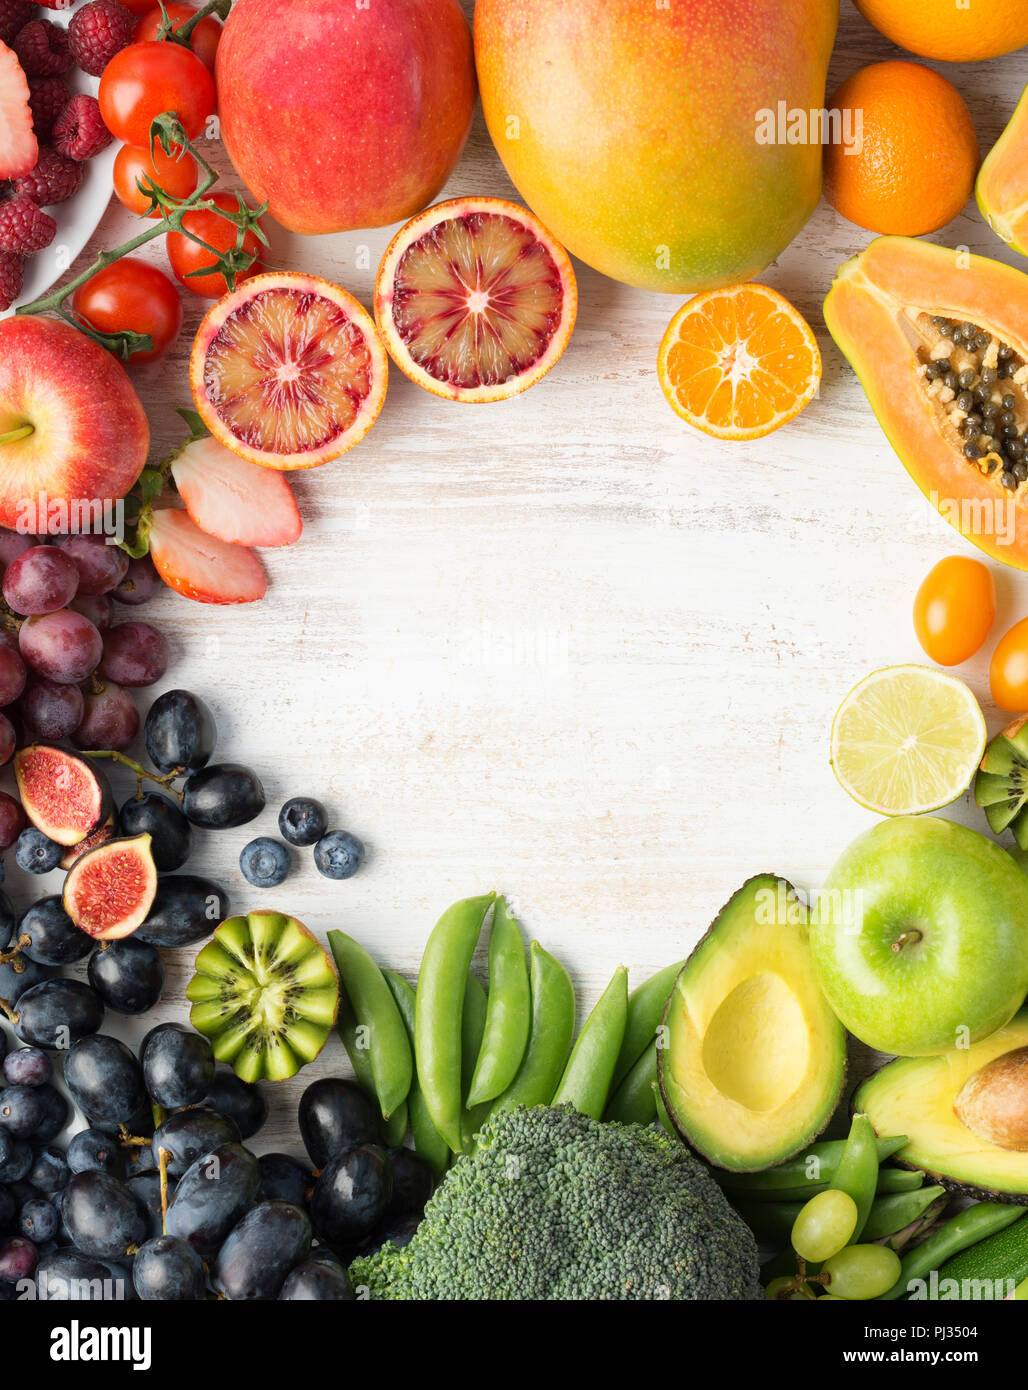 L'alimentation saine, l'varieity des fruits et légumes dans les couleurs arc-en-ciel sur l'off white table dans une trame avec copie espace vertical, vue de dessus, selective focus Banque D'Images